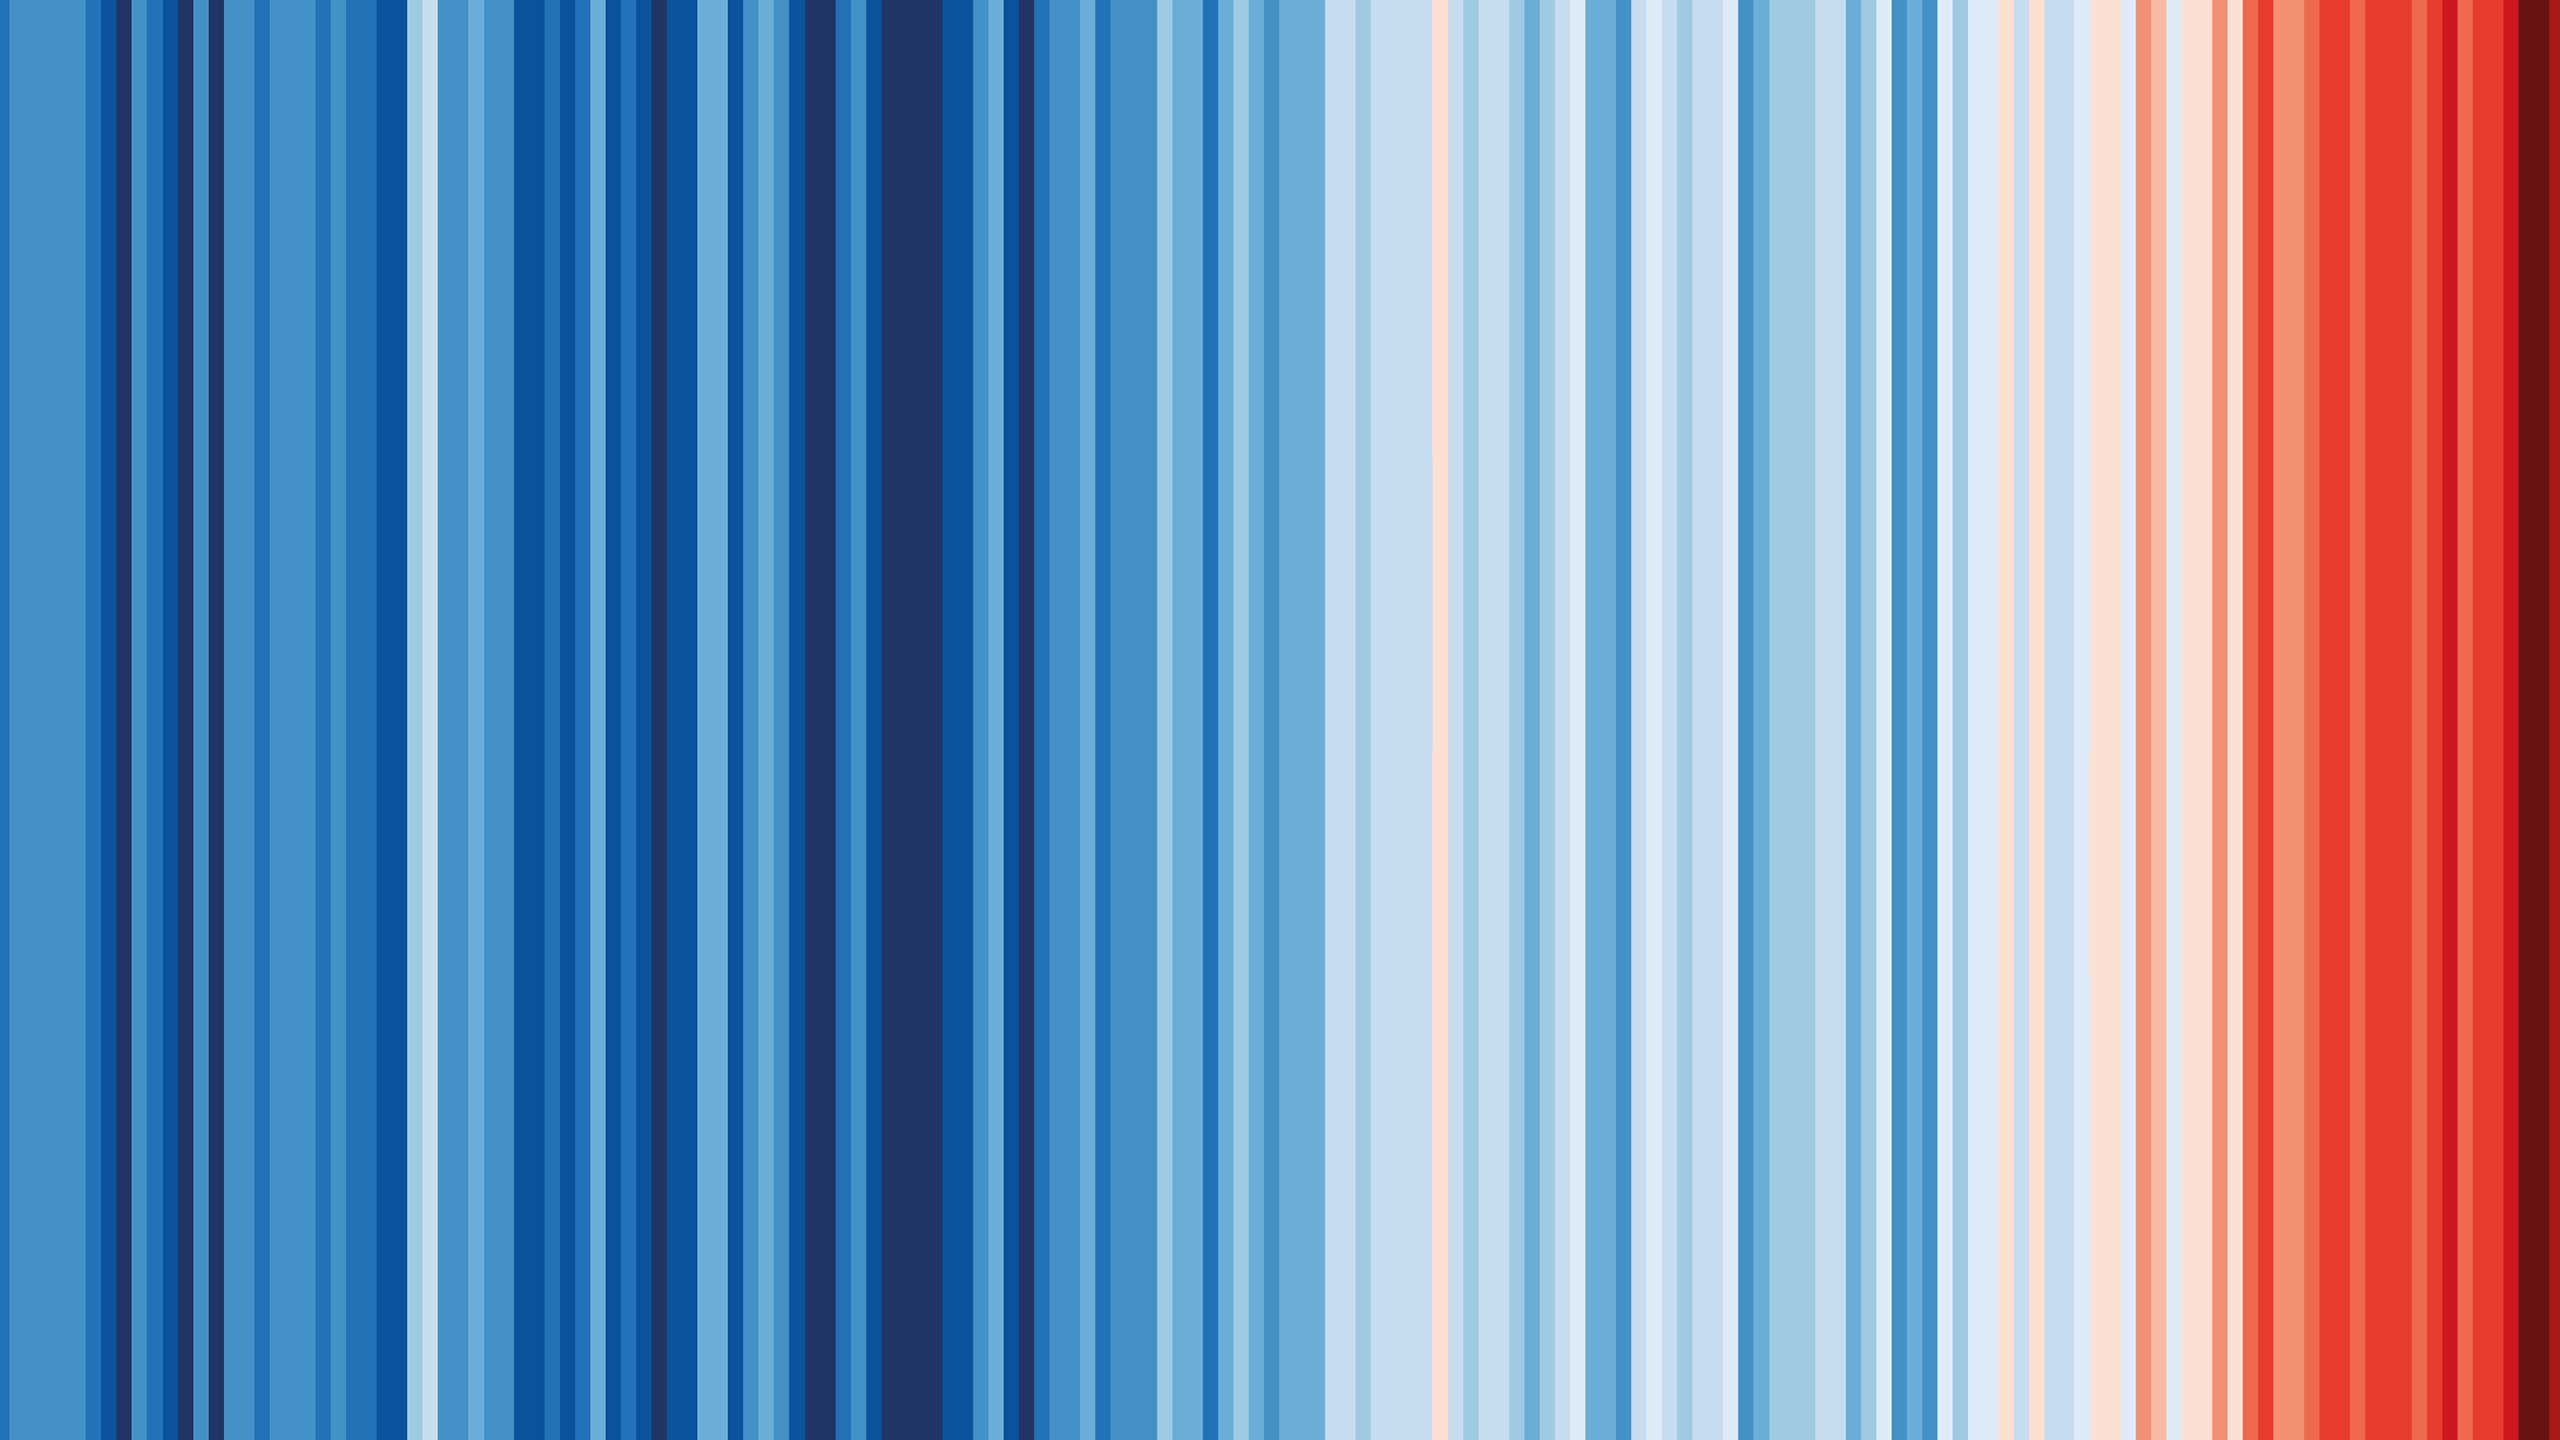 Klimawandel / warming stripes